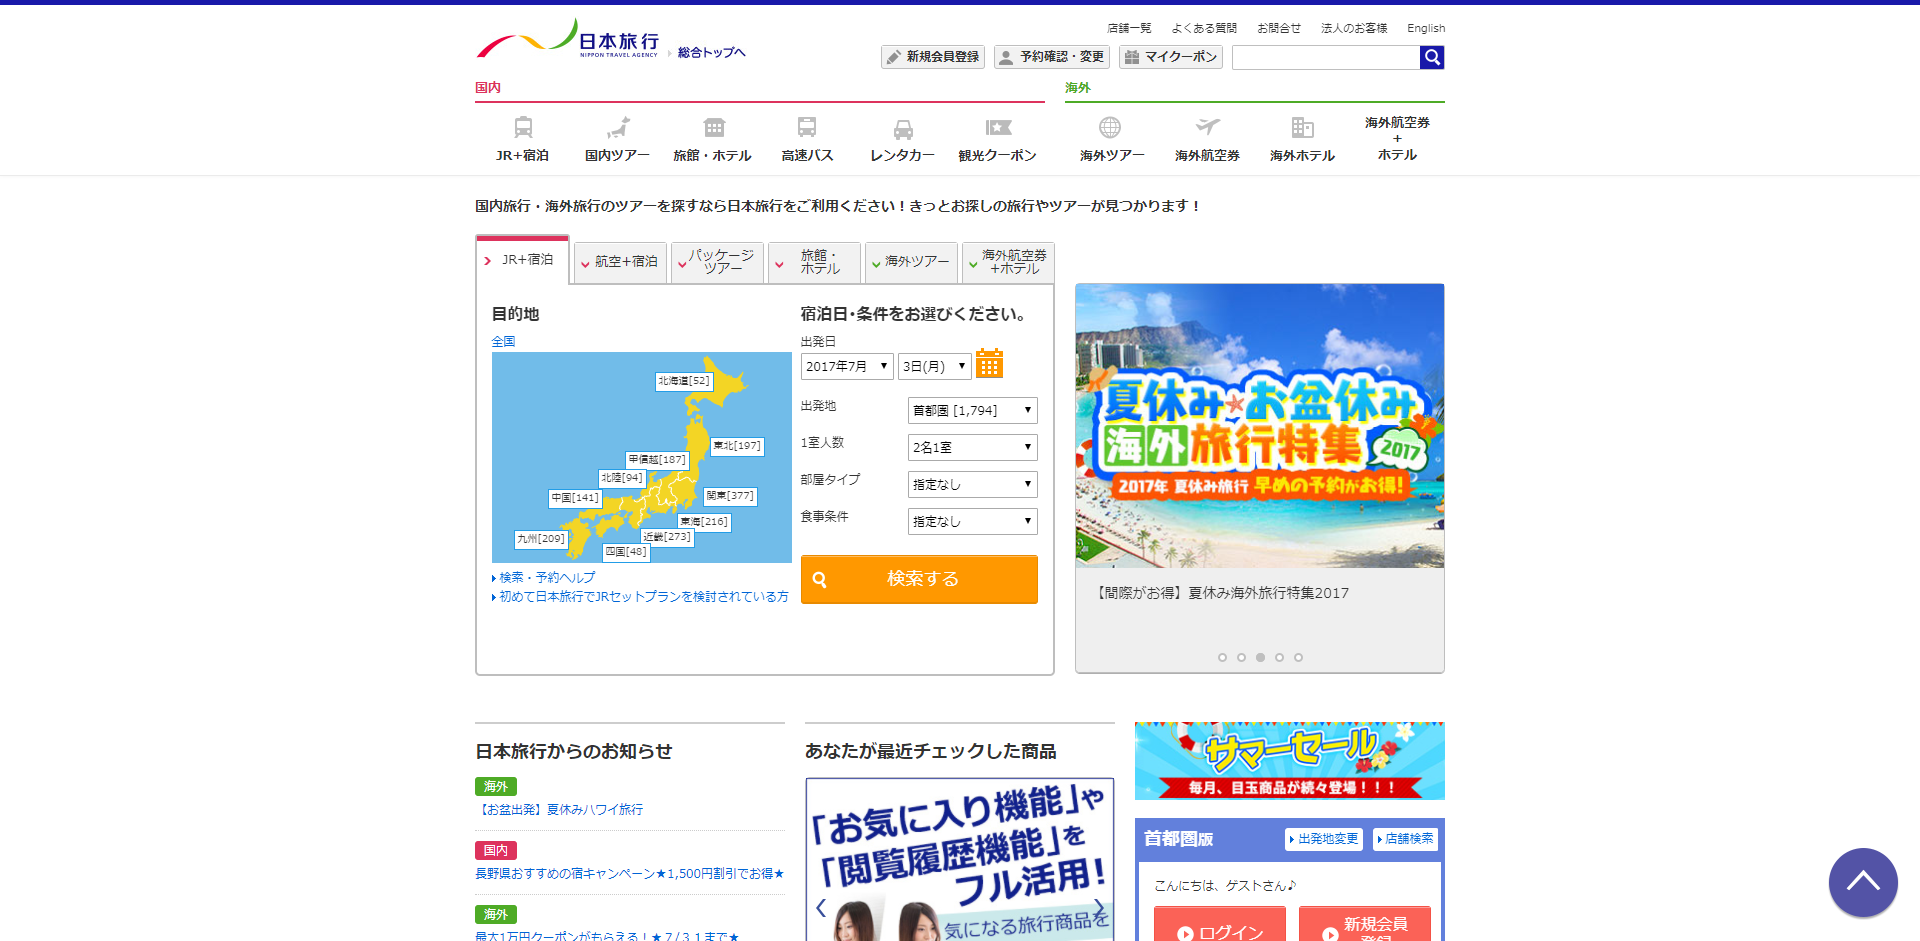 「日本旅行」の公式サイト